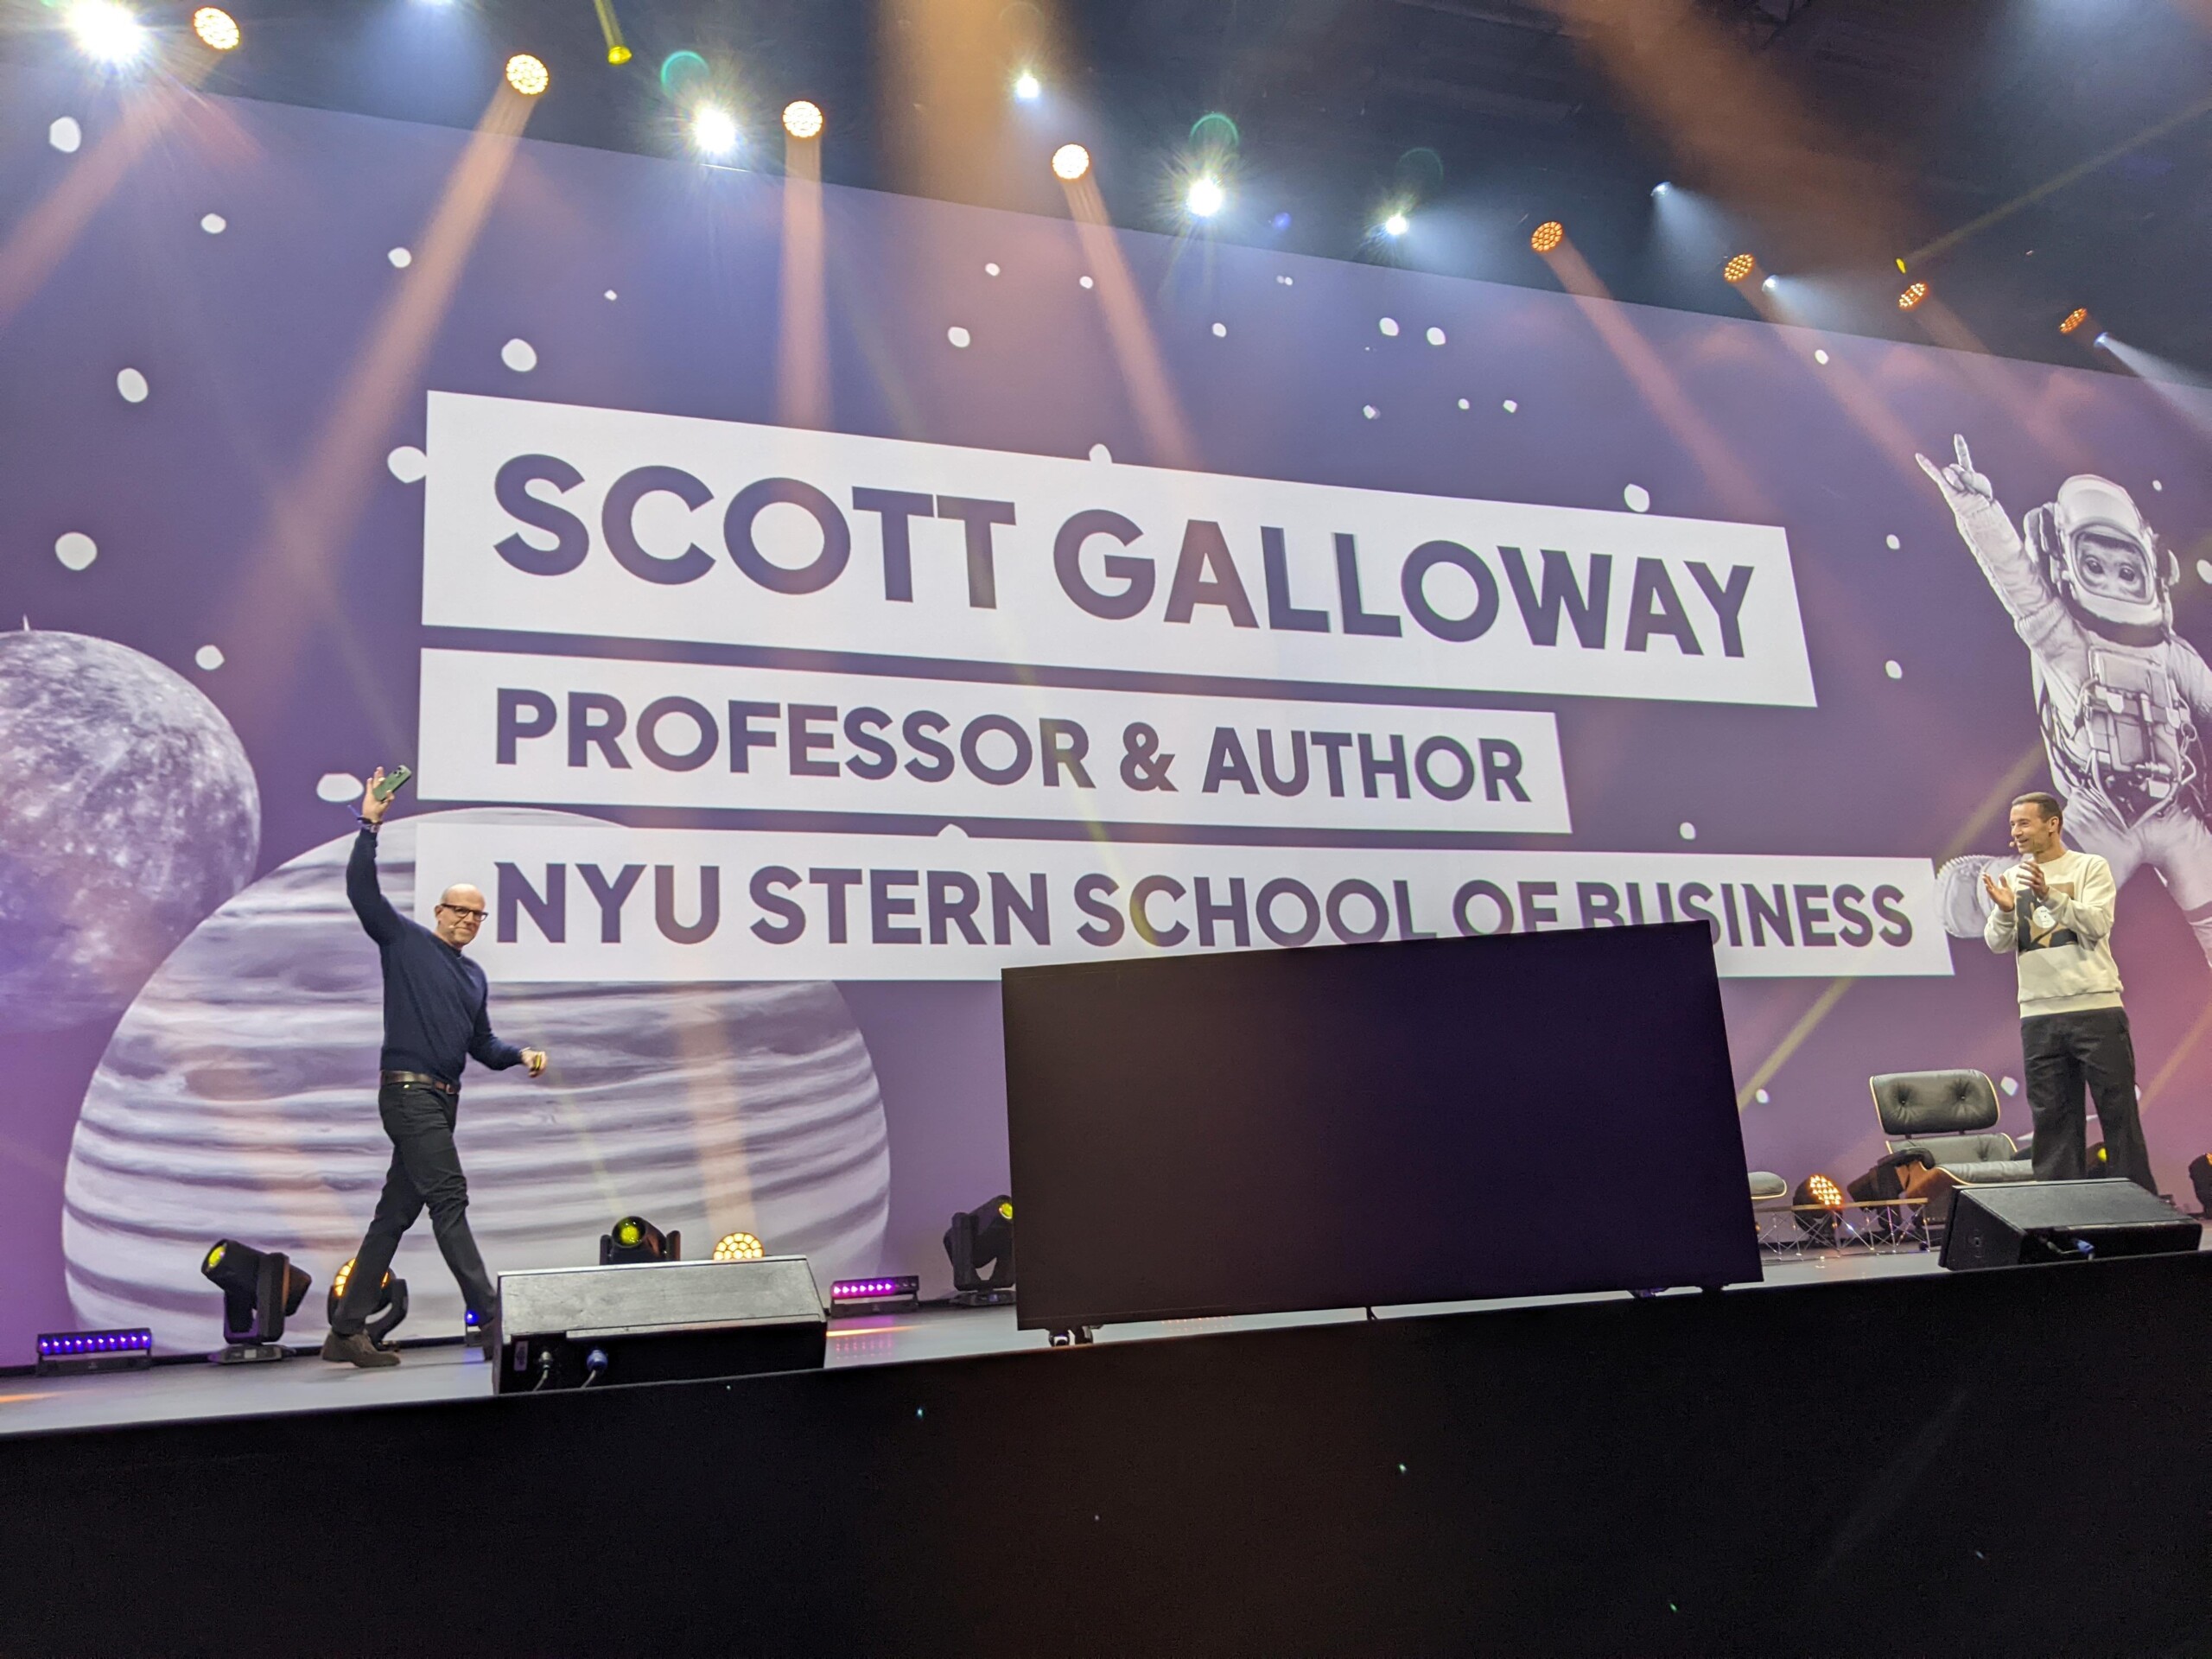 Digital expert Scott Galloway